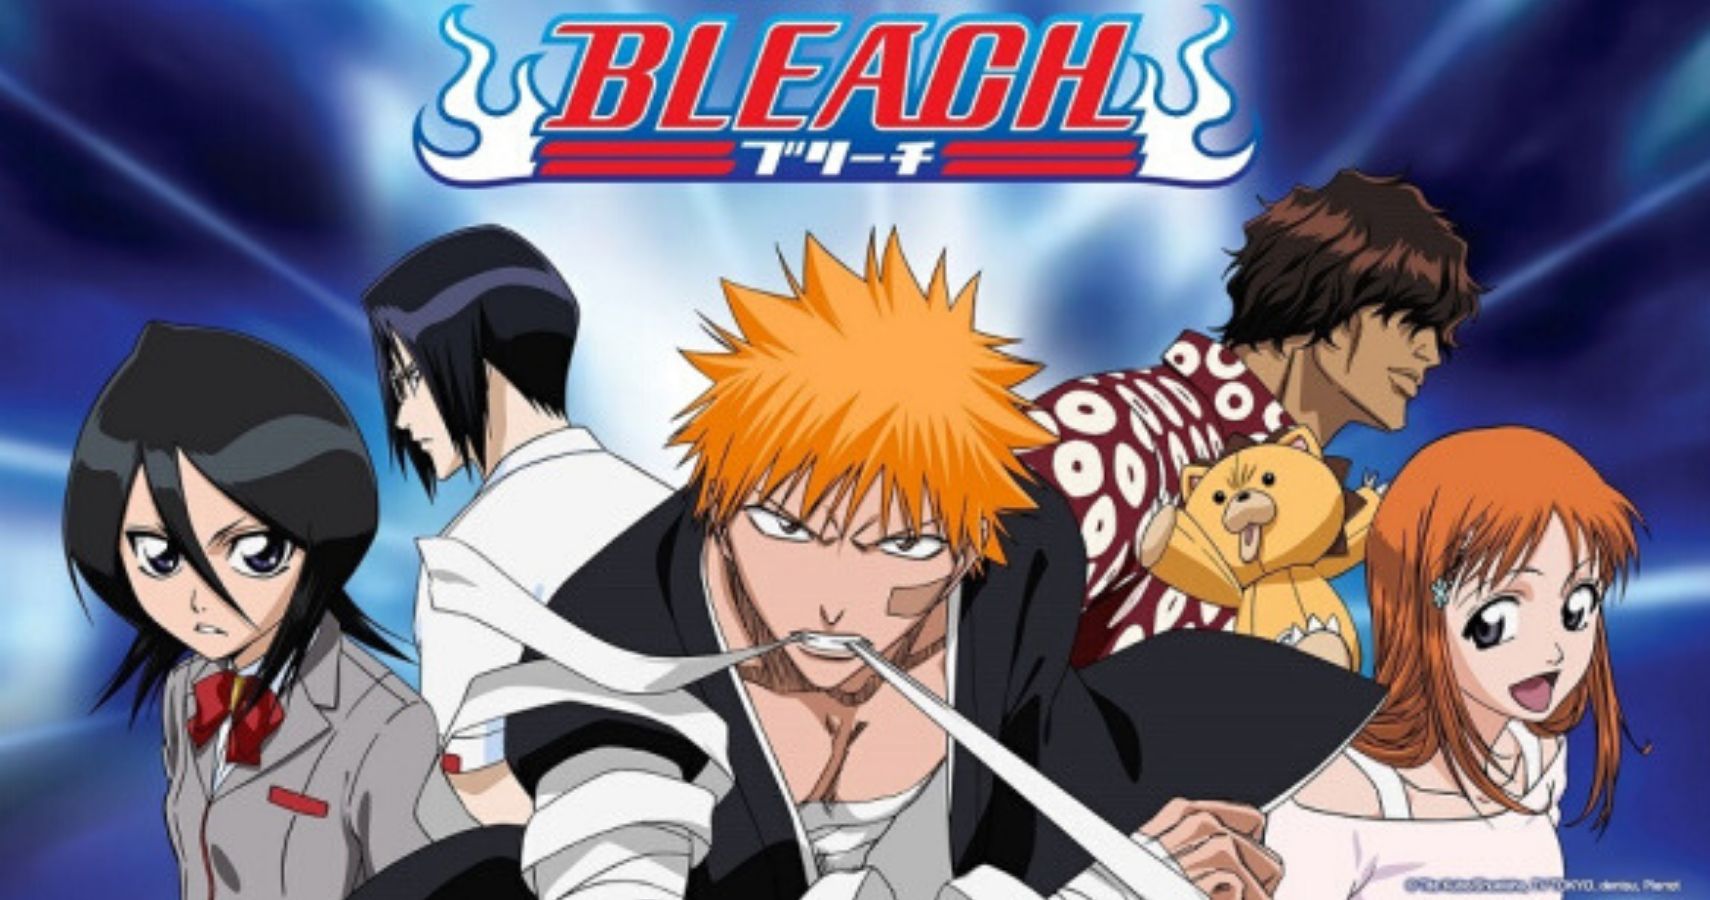 Bleach Anime Photo: Bleach Characters  Bleach characters, Bleach anime,  Anime